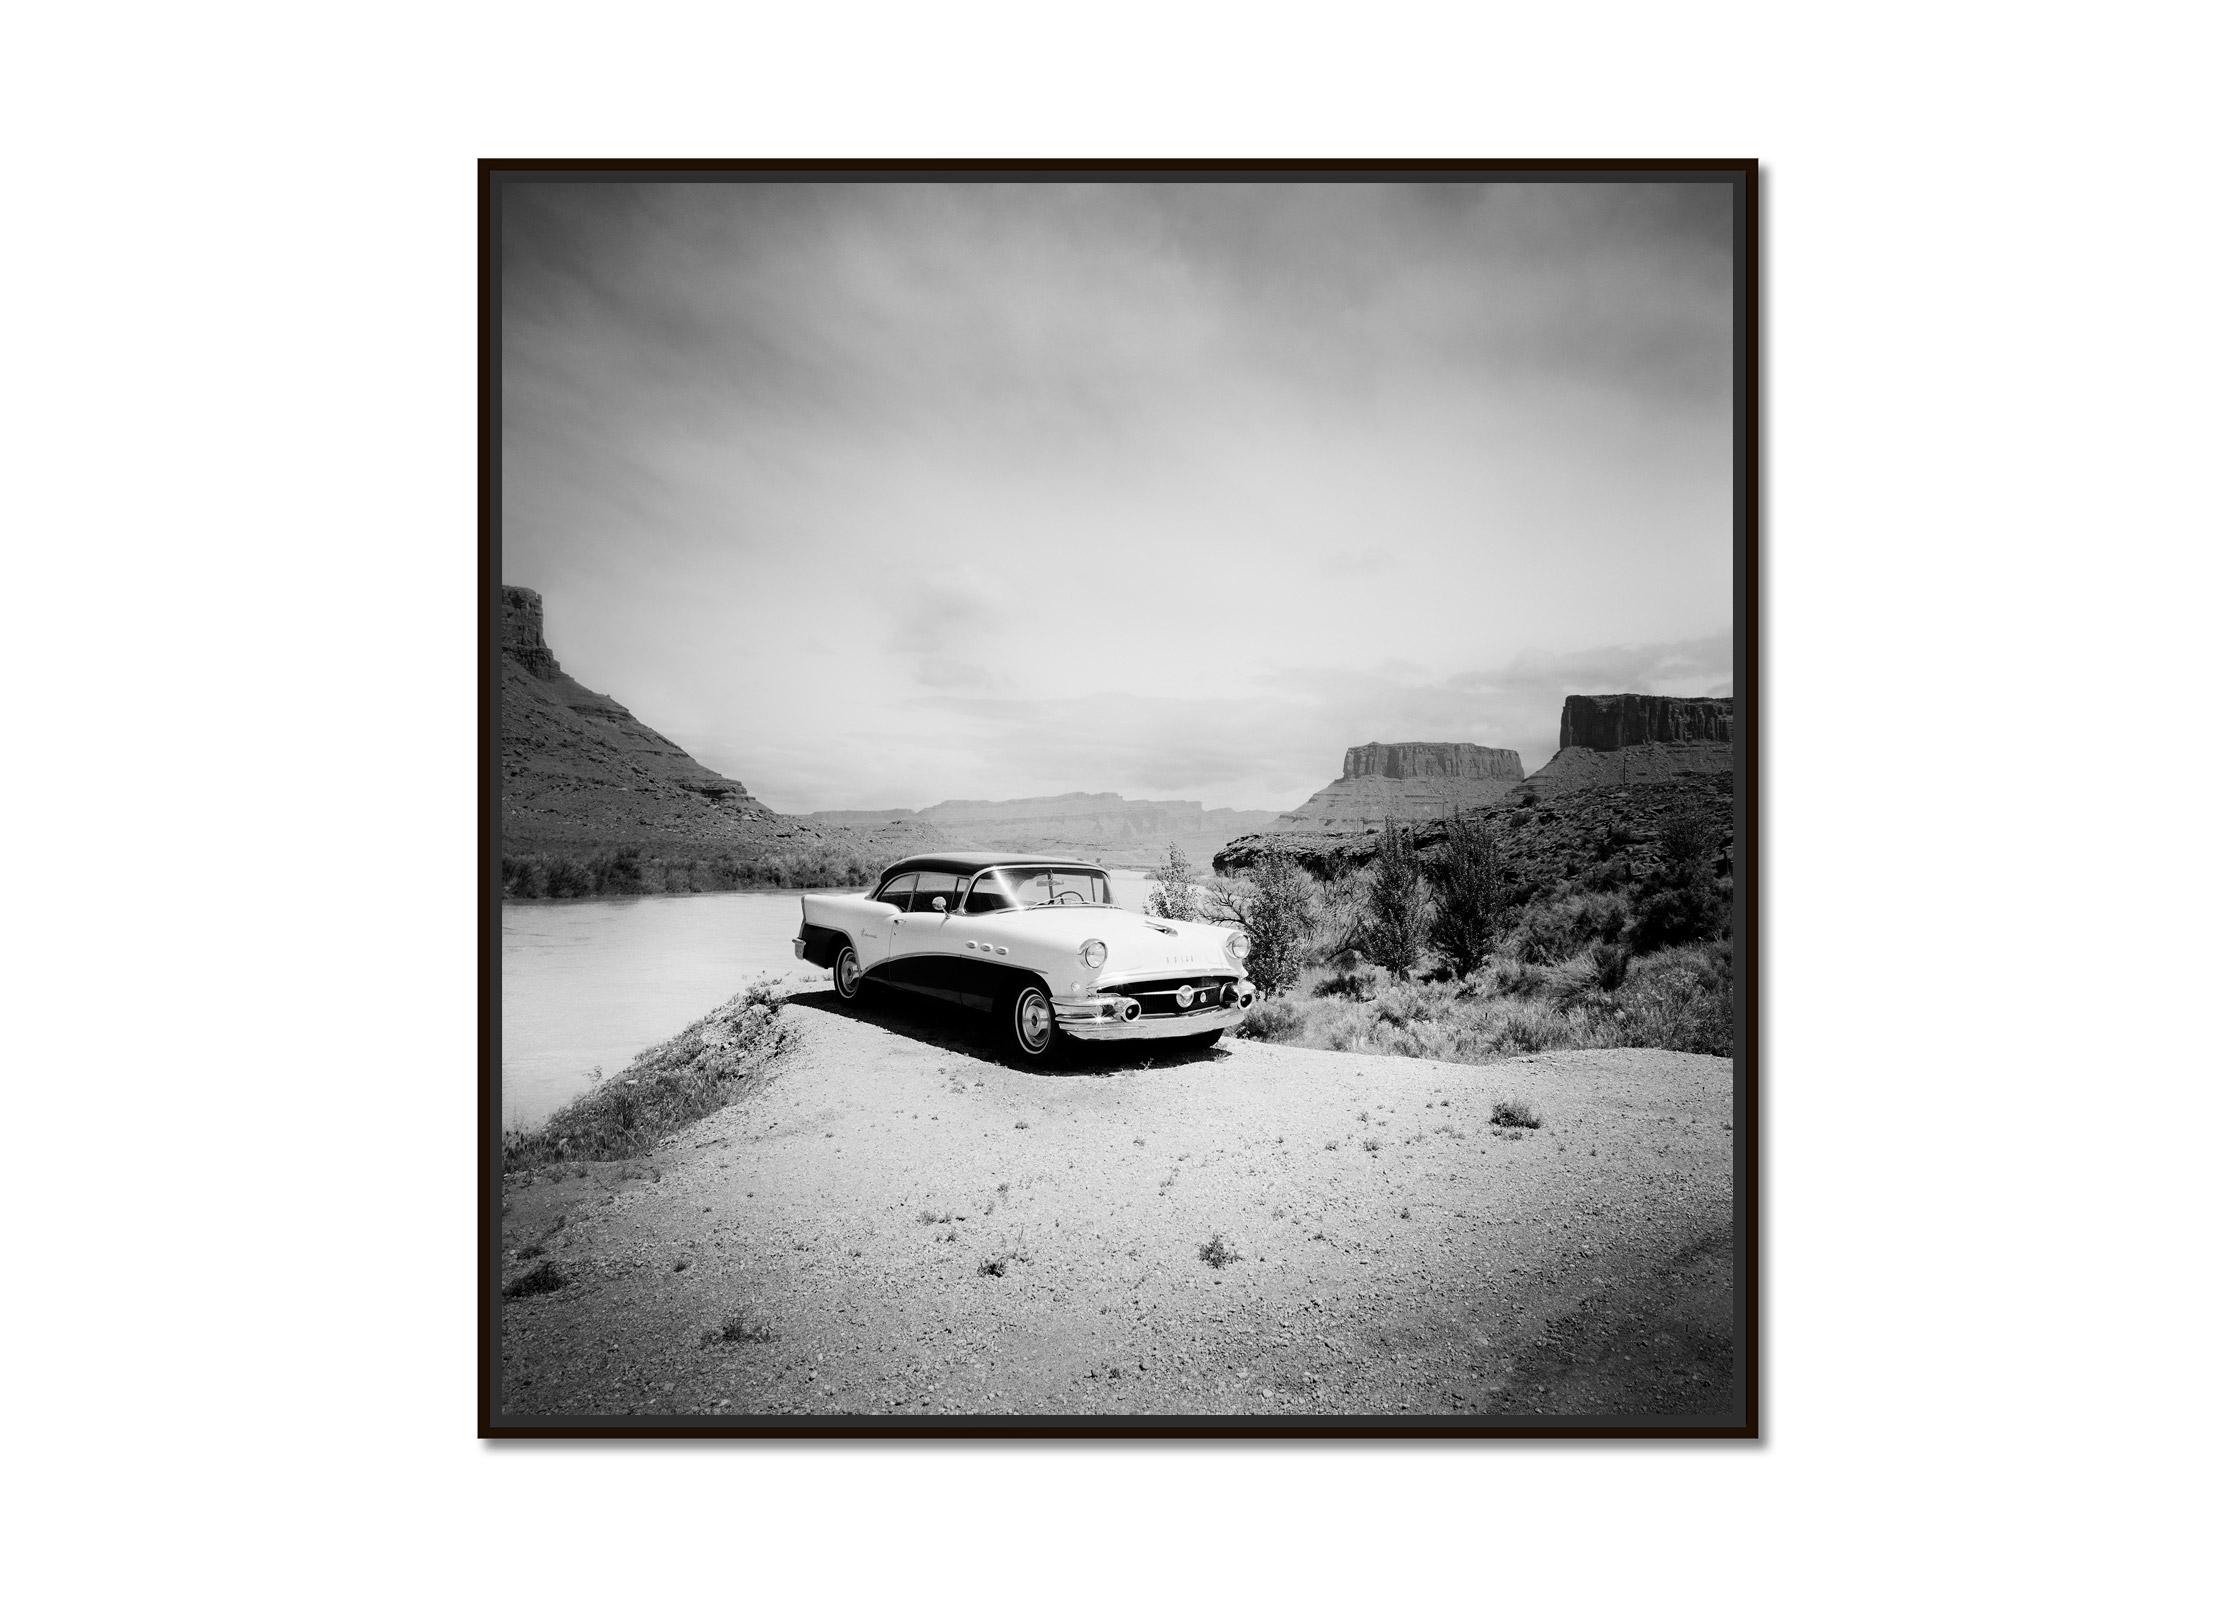 Buick 60 Century Convertible, Wüste, USA, schwarz-weiß Landschaftsfotografie – Photograph von Gerald Berghammer